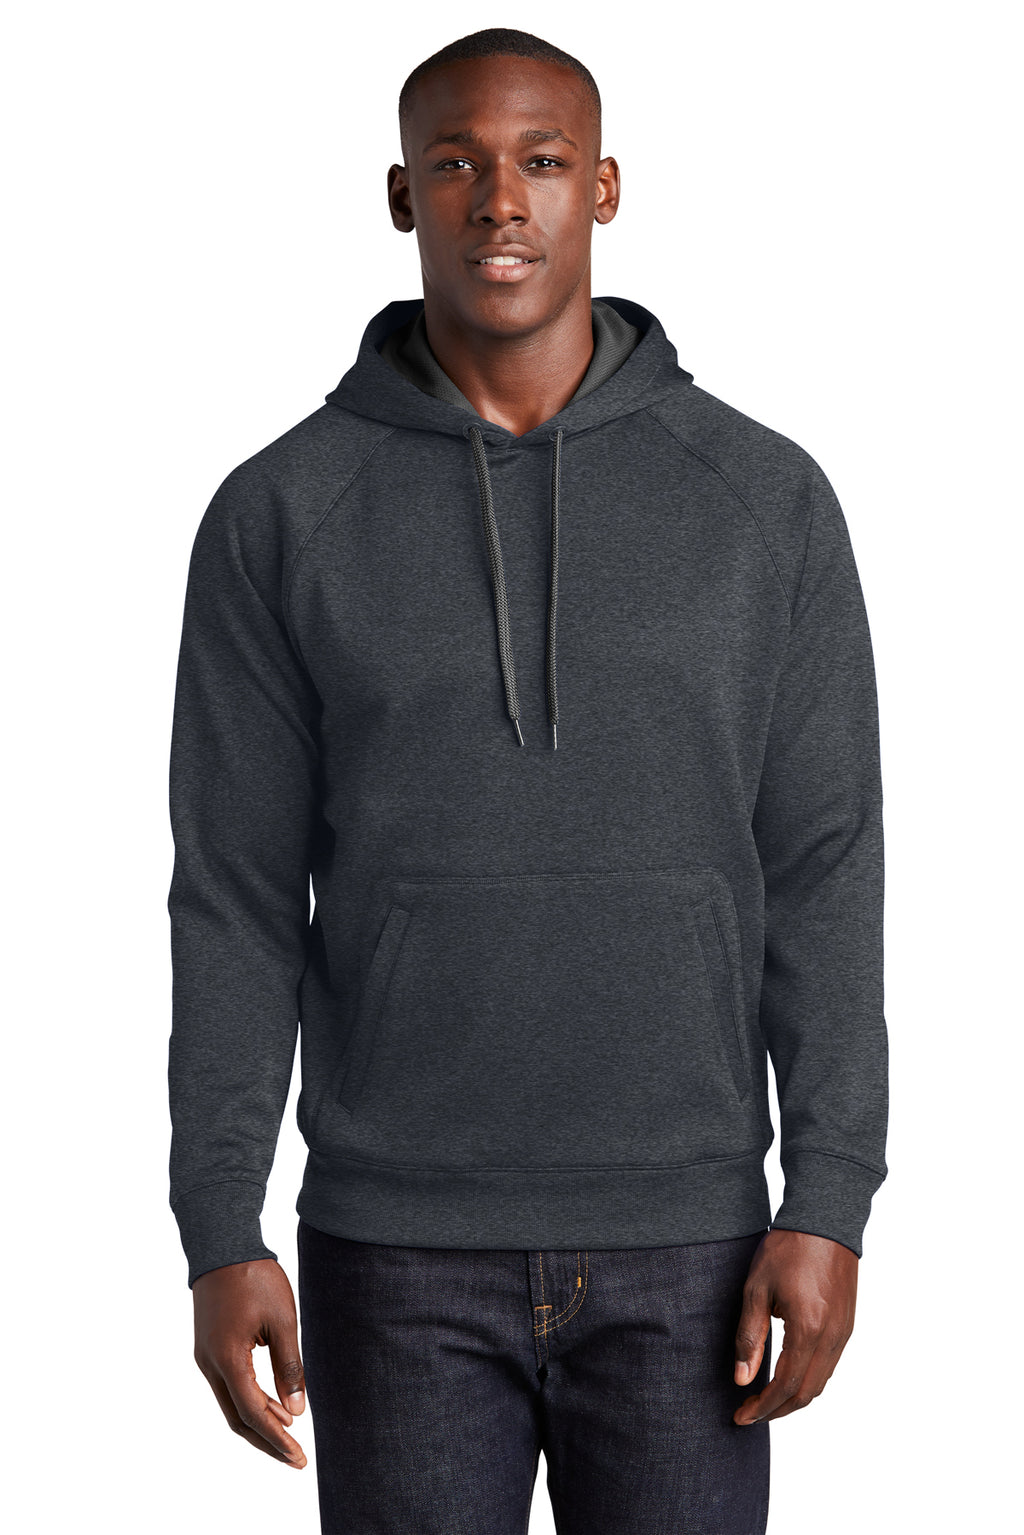 Sport-Tek® Tech Fleece Hooded Sweatshirt - ST250 - Group B